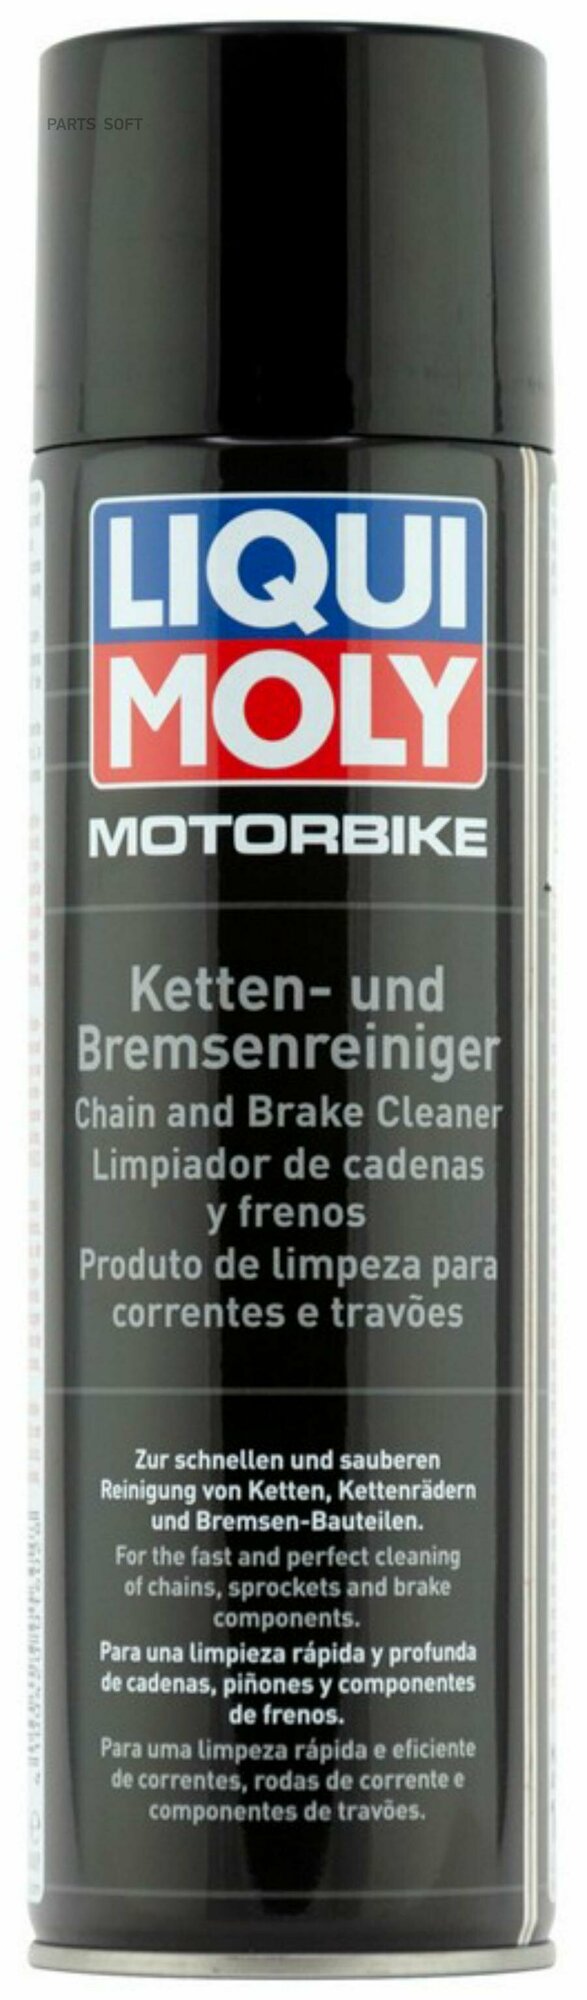 Очиститель LIQUI MOLY Motorbike Ketten-Reiniger